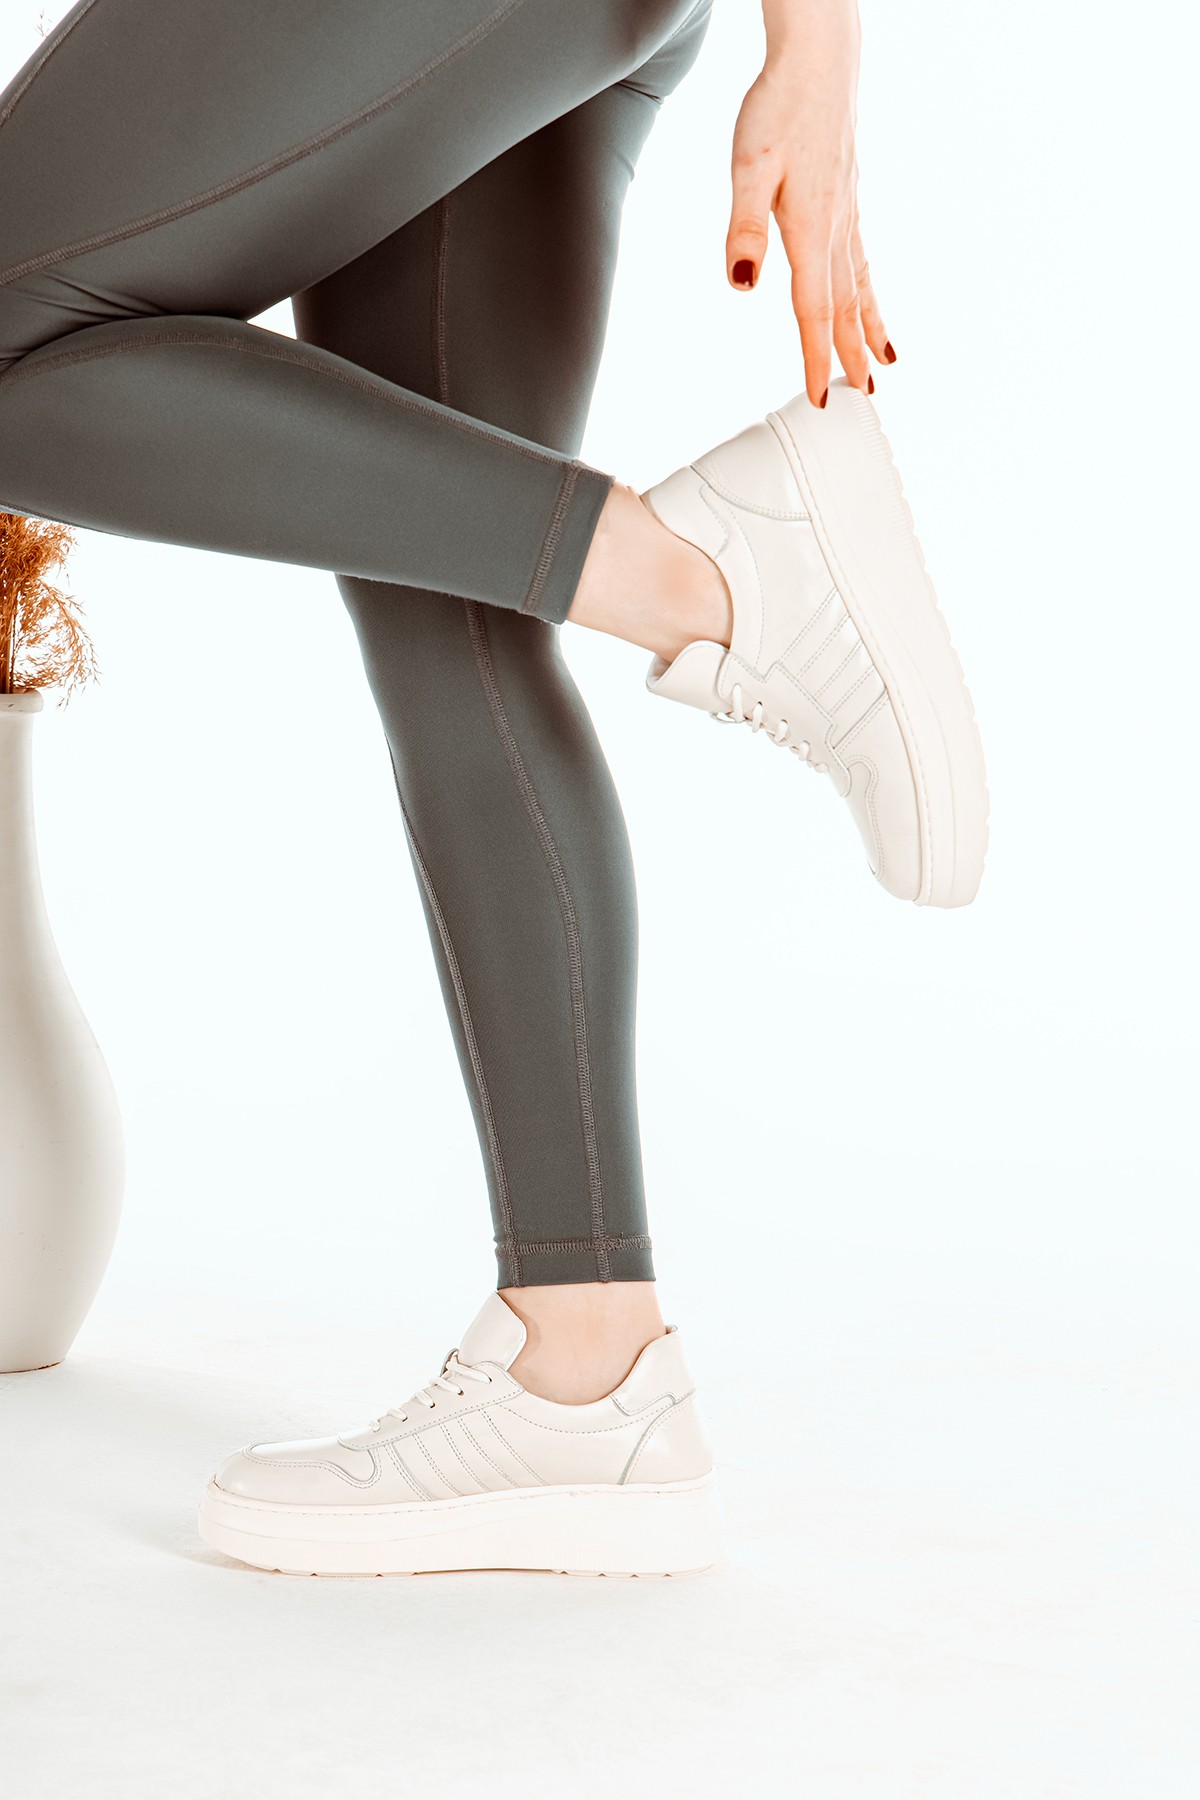 Cooliza Hakiki Deri Sneaker Yüksek Taban Rahat Günlük Kadın Spor Ayakkabı - Kırık Beyaz